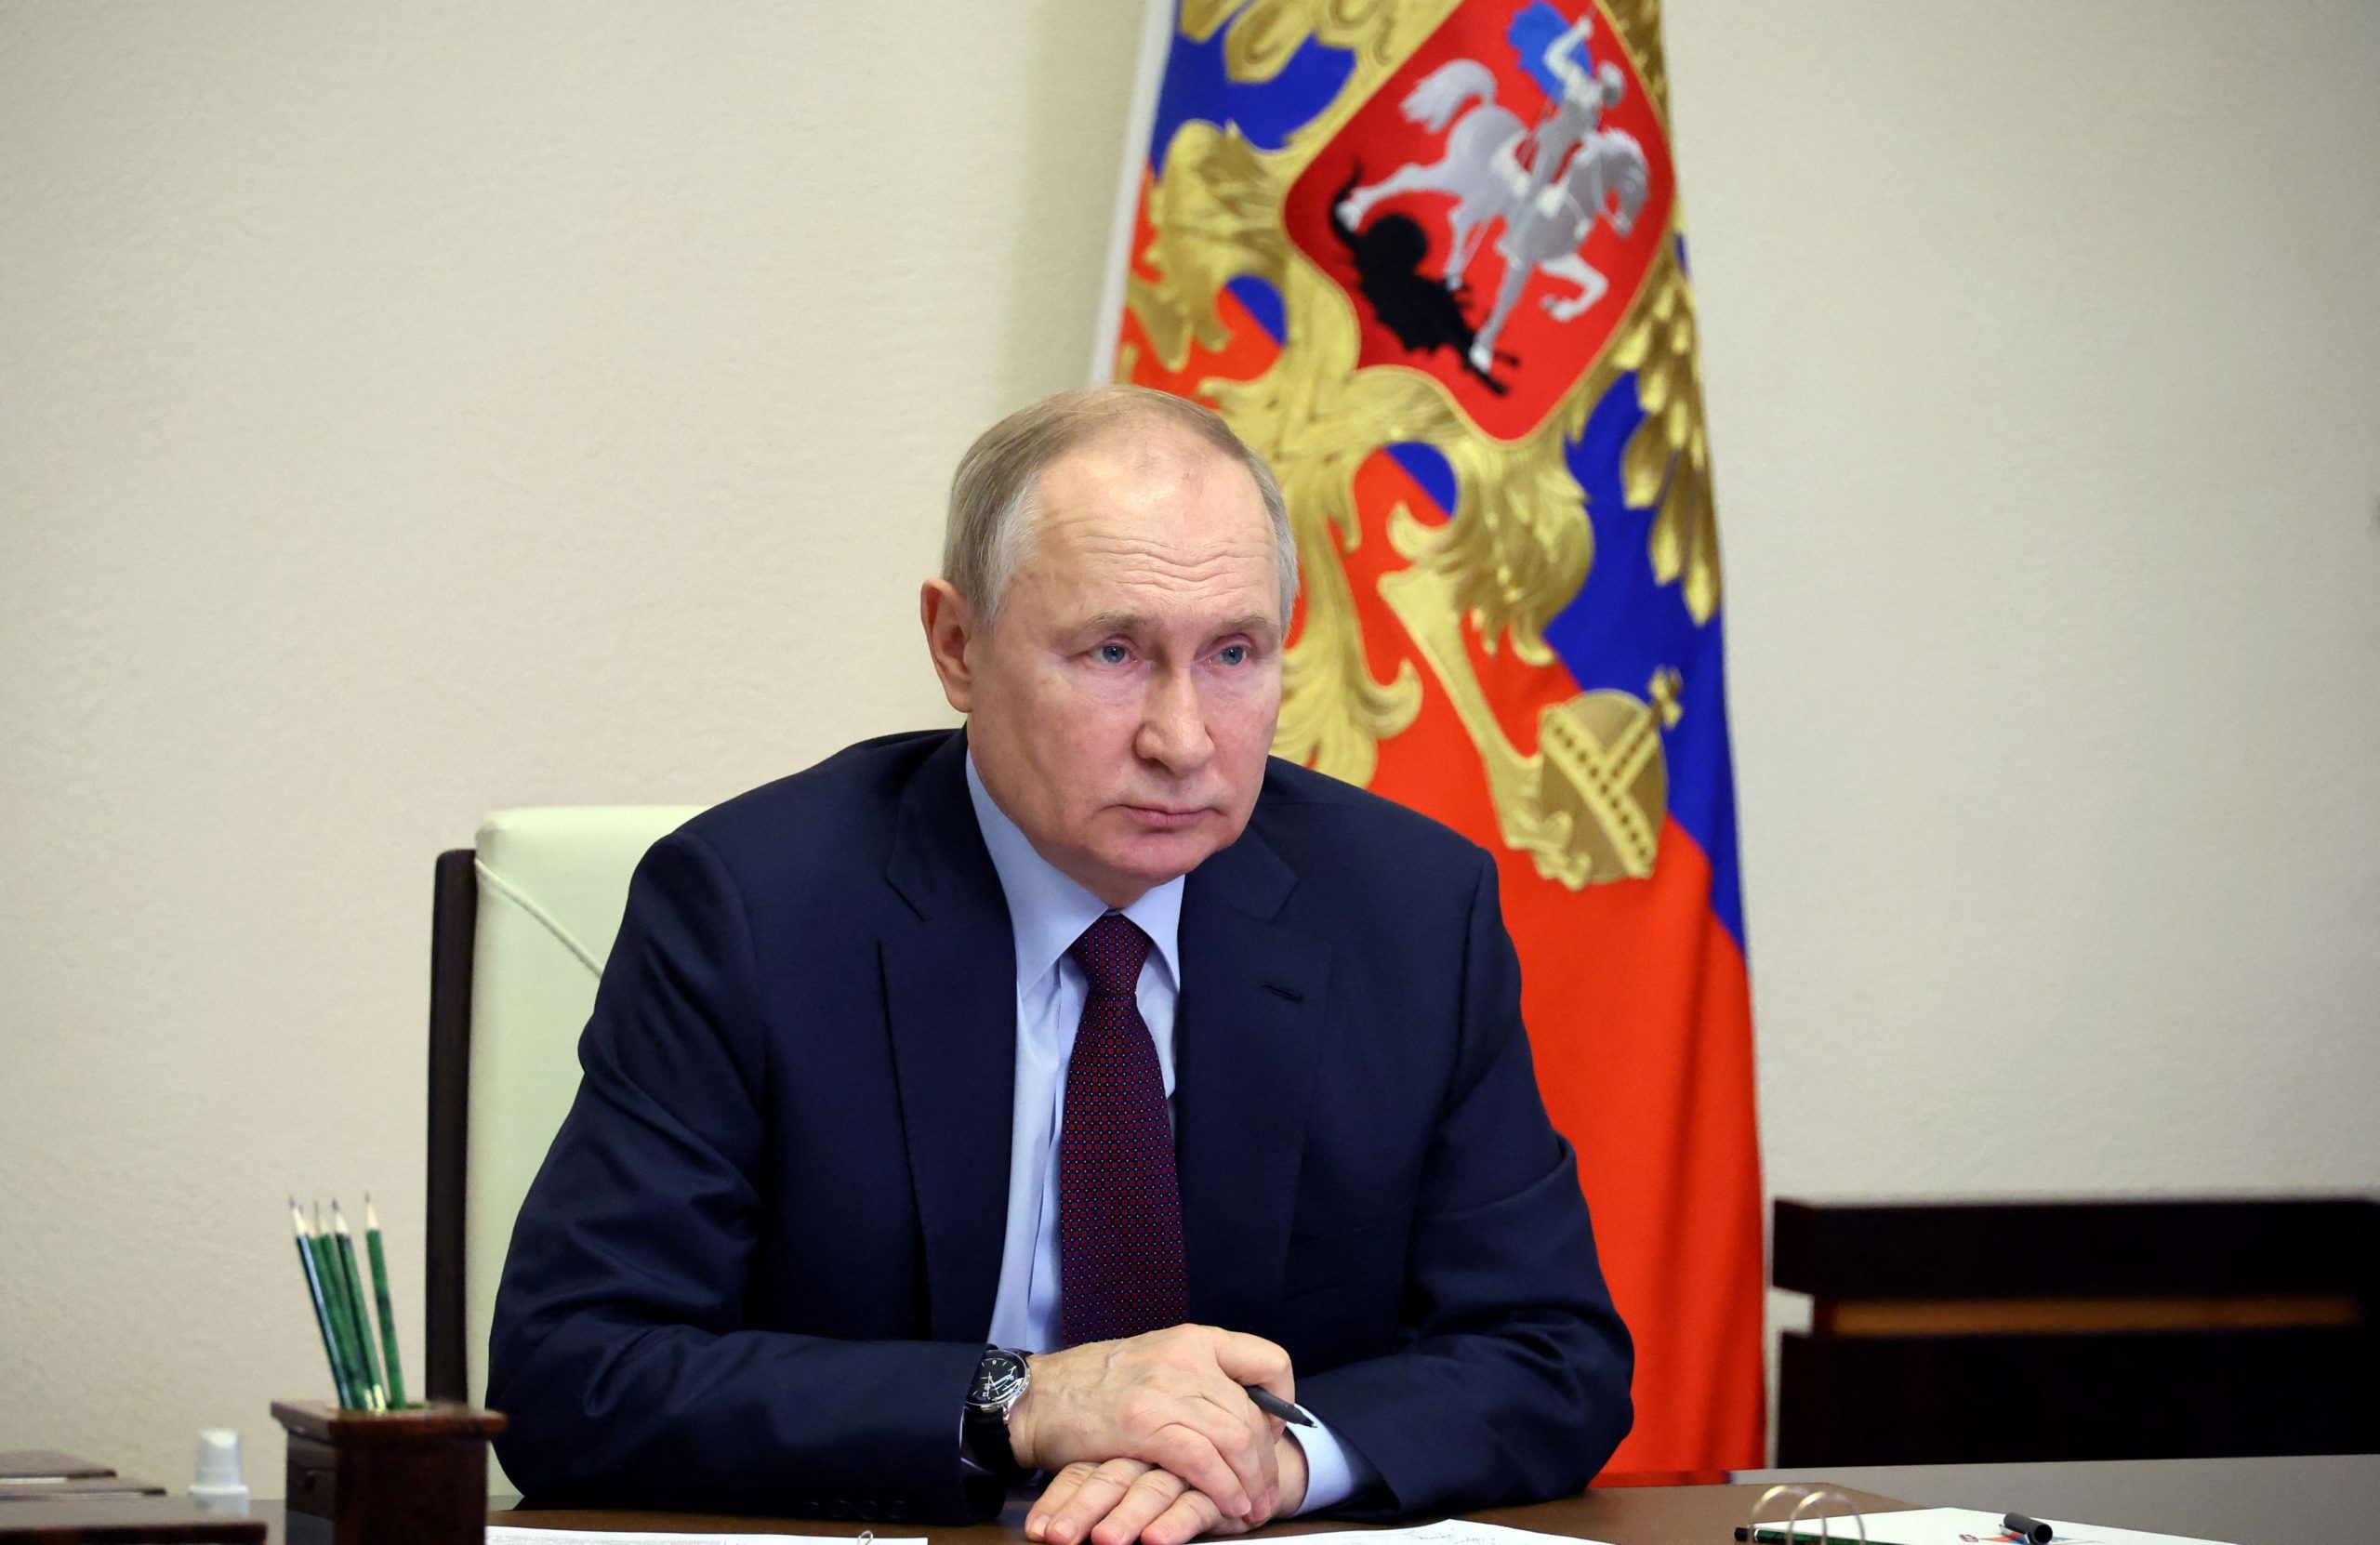 Ρωσία: Το Κρεμλίνο ετοιμάζεται να προτείνει τον Πούτιν ως υποψήφιο για την προεδρία το 2024